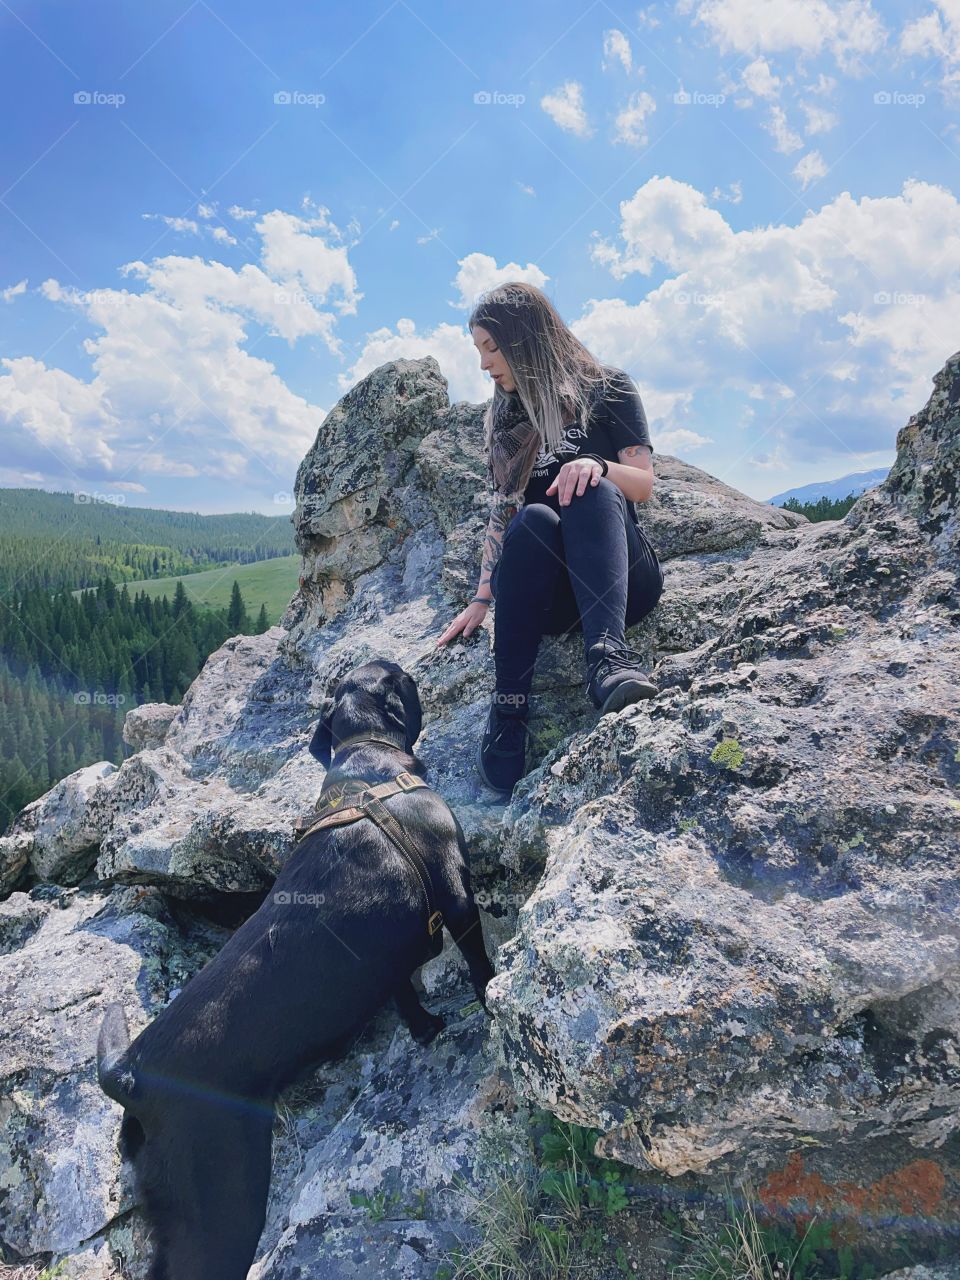 Selfie me girl rocks animal dog hiking sitting mountainside